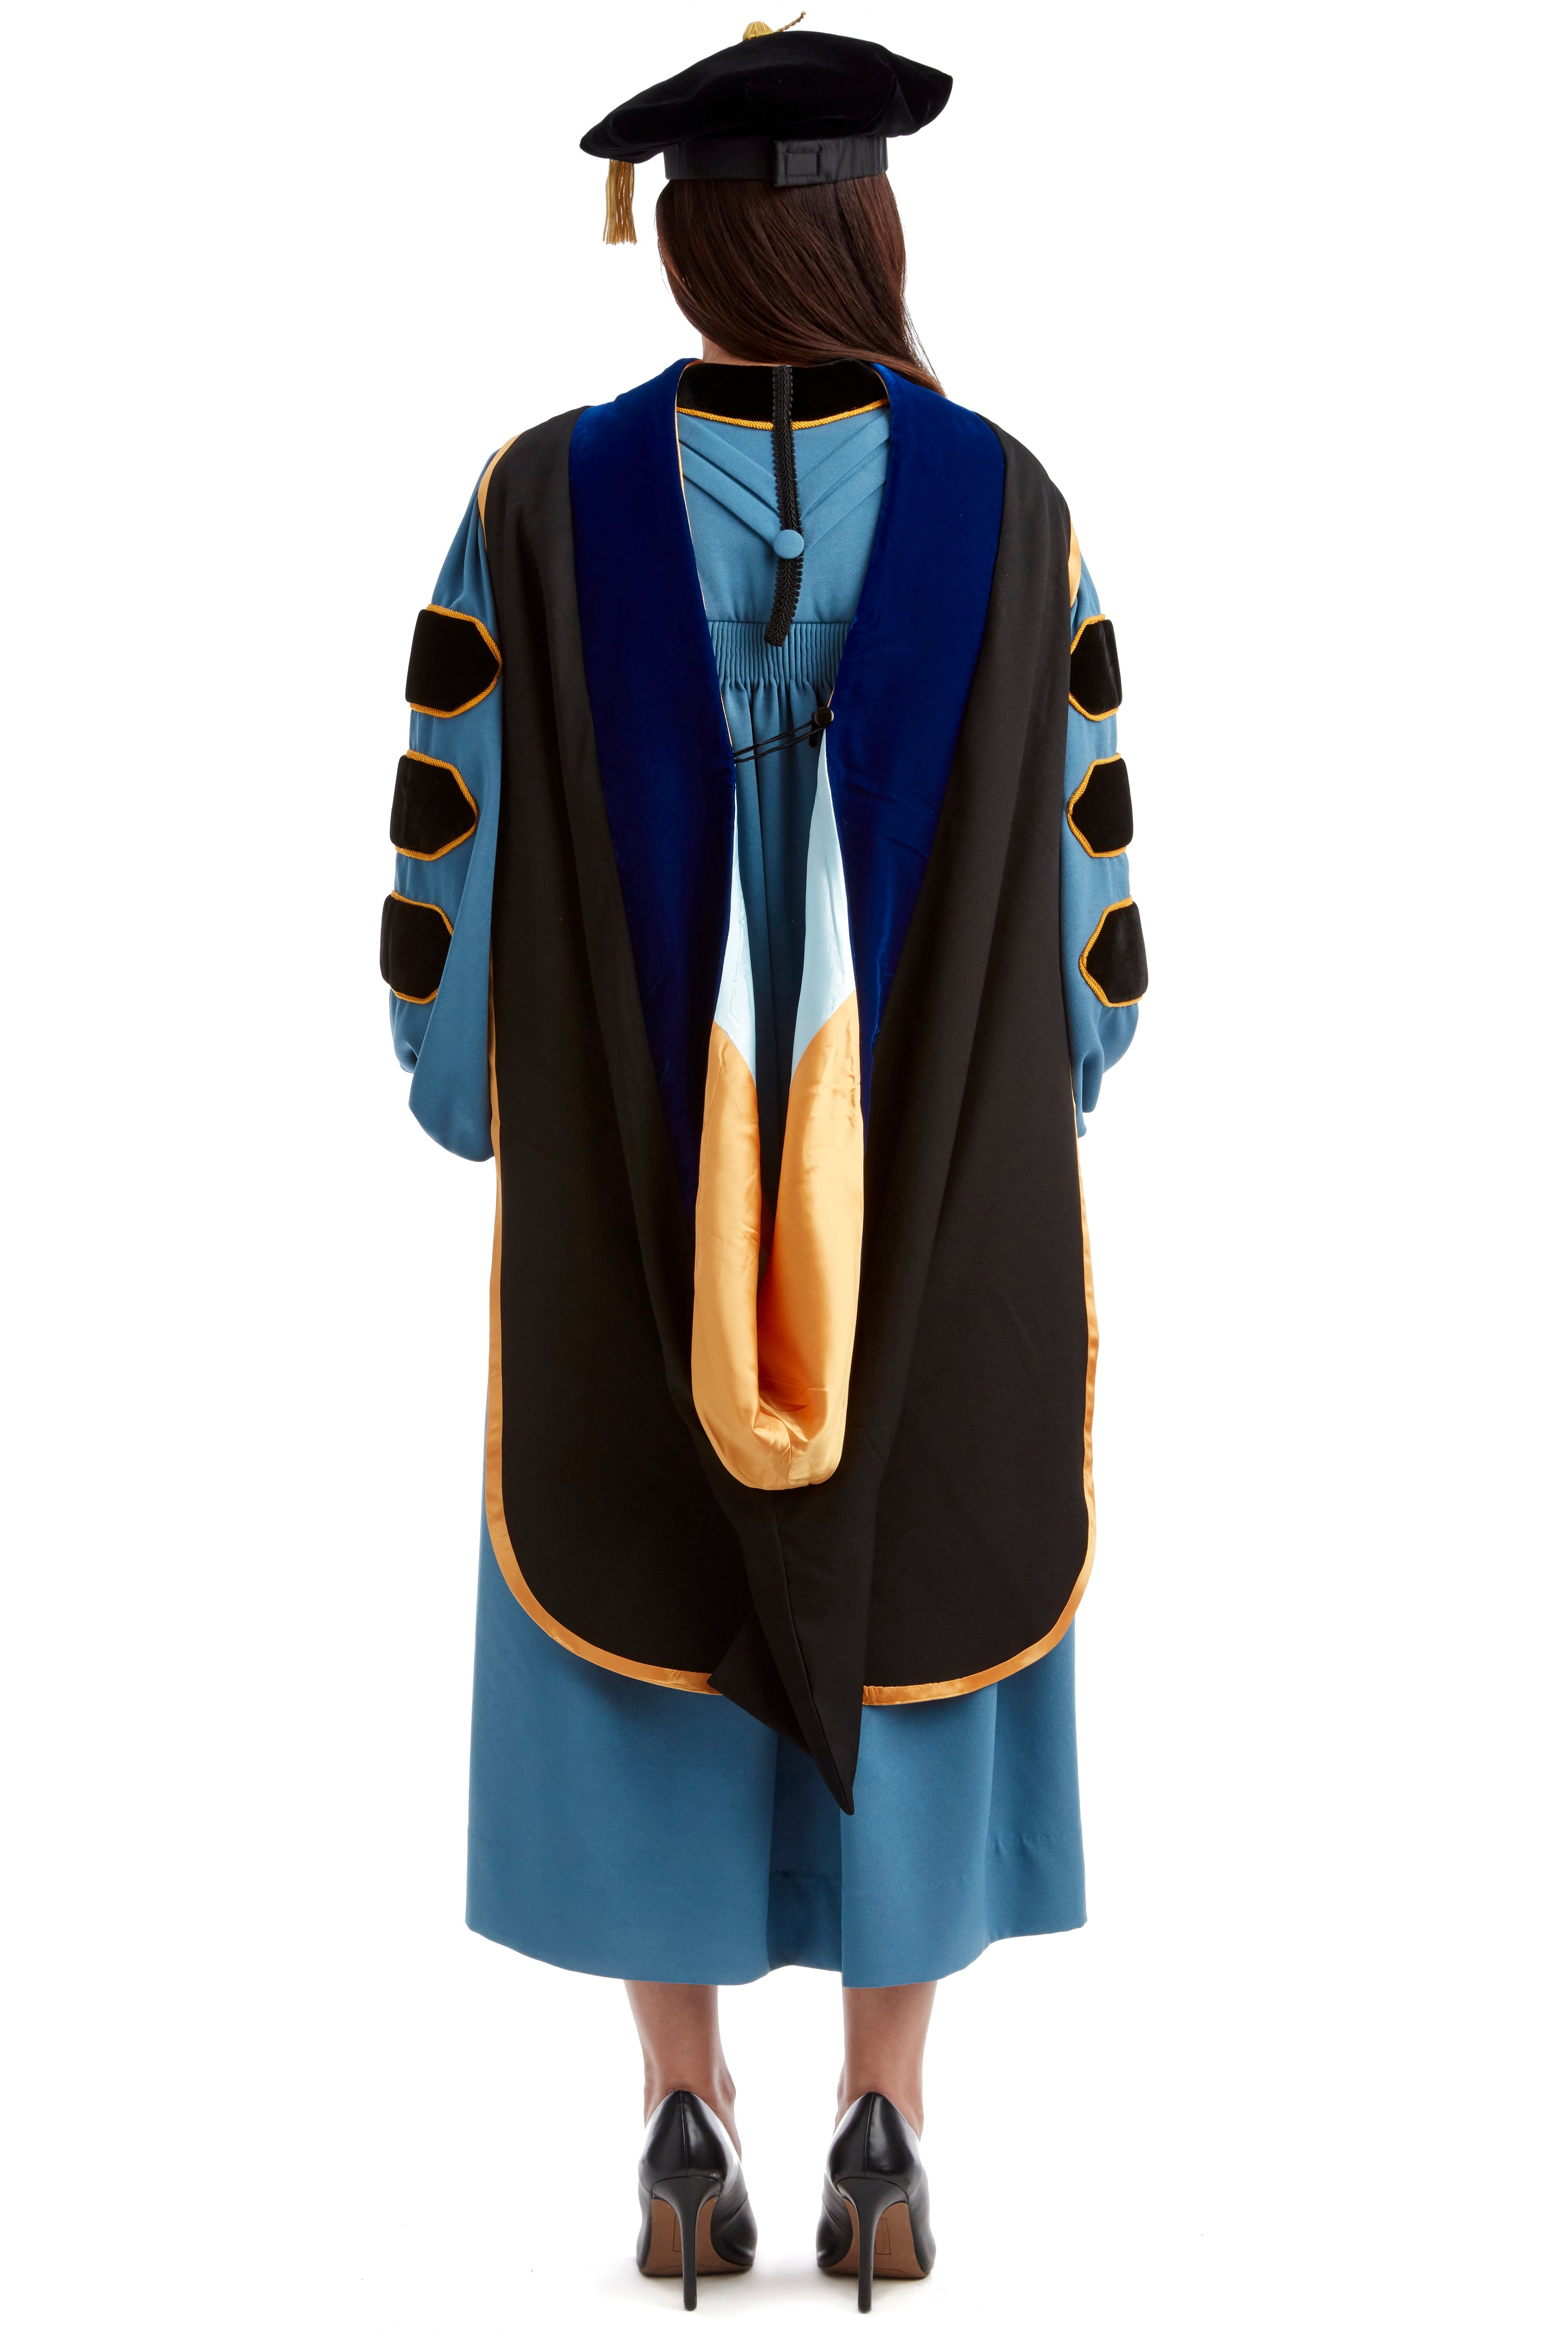 PhinisheD Gown: Premium UVA Doctoral Regalia